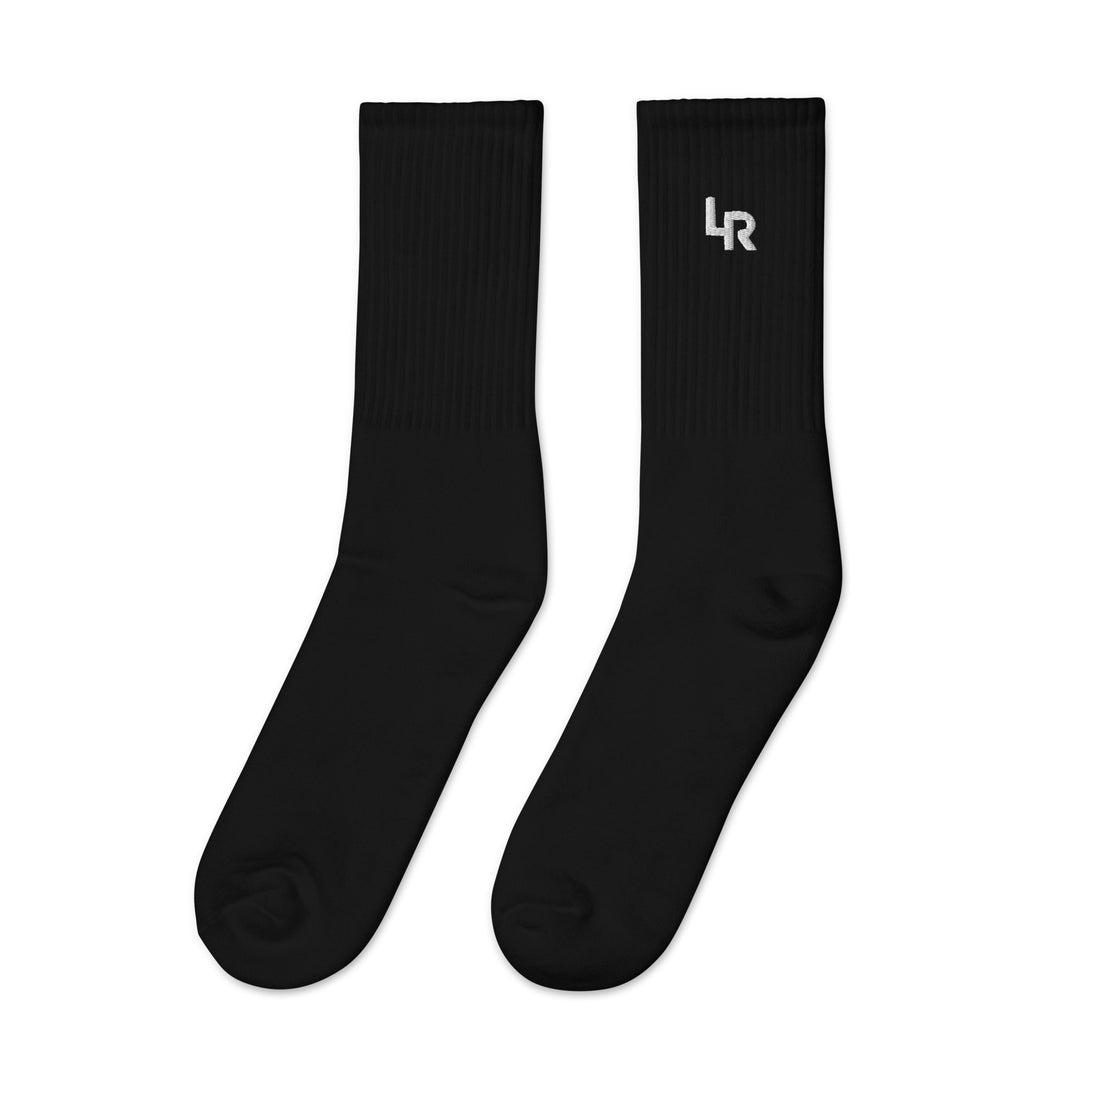 Black Performance Socks